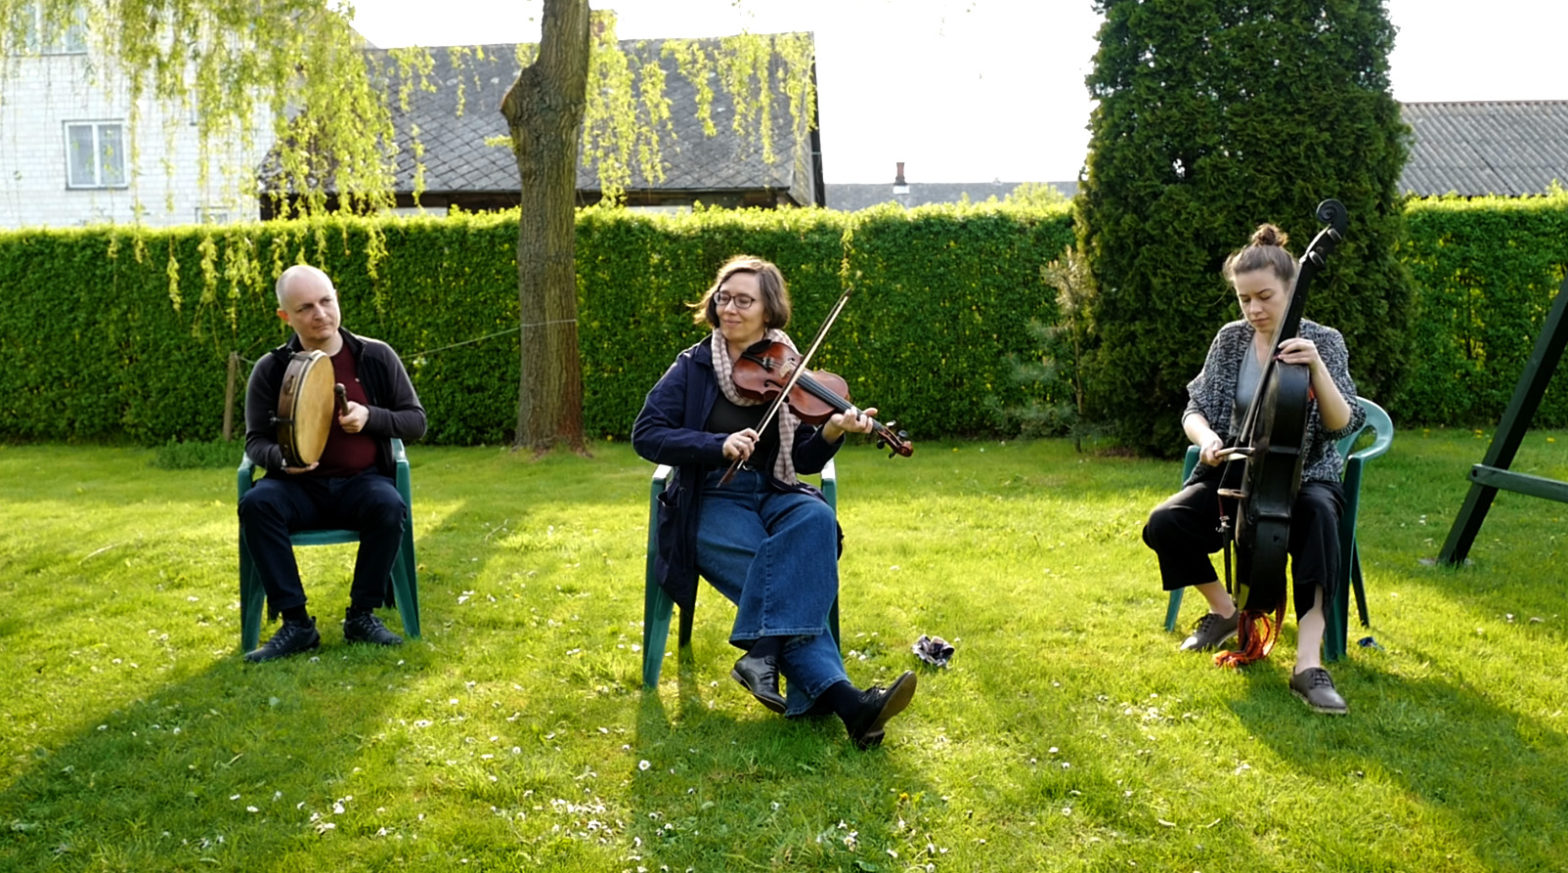 Trzyosobowy zespół odgrywa koncert na trawniku.